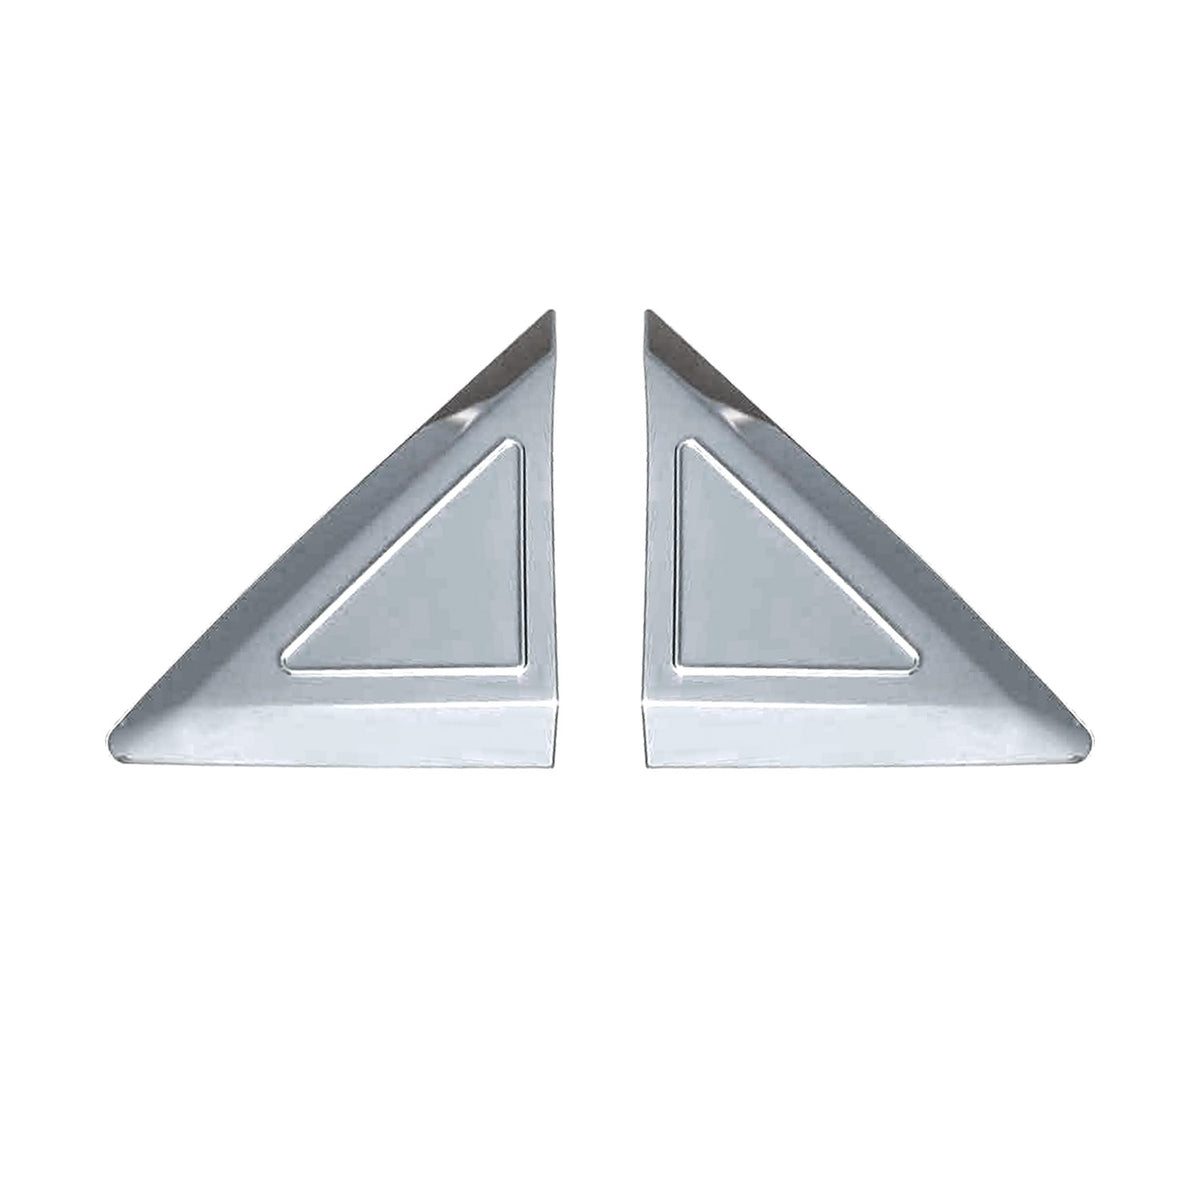 Window triangle window strips for Mercedes Sprinter W906 2006-2018 chrome 2-piece